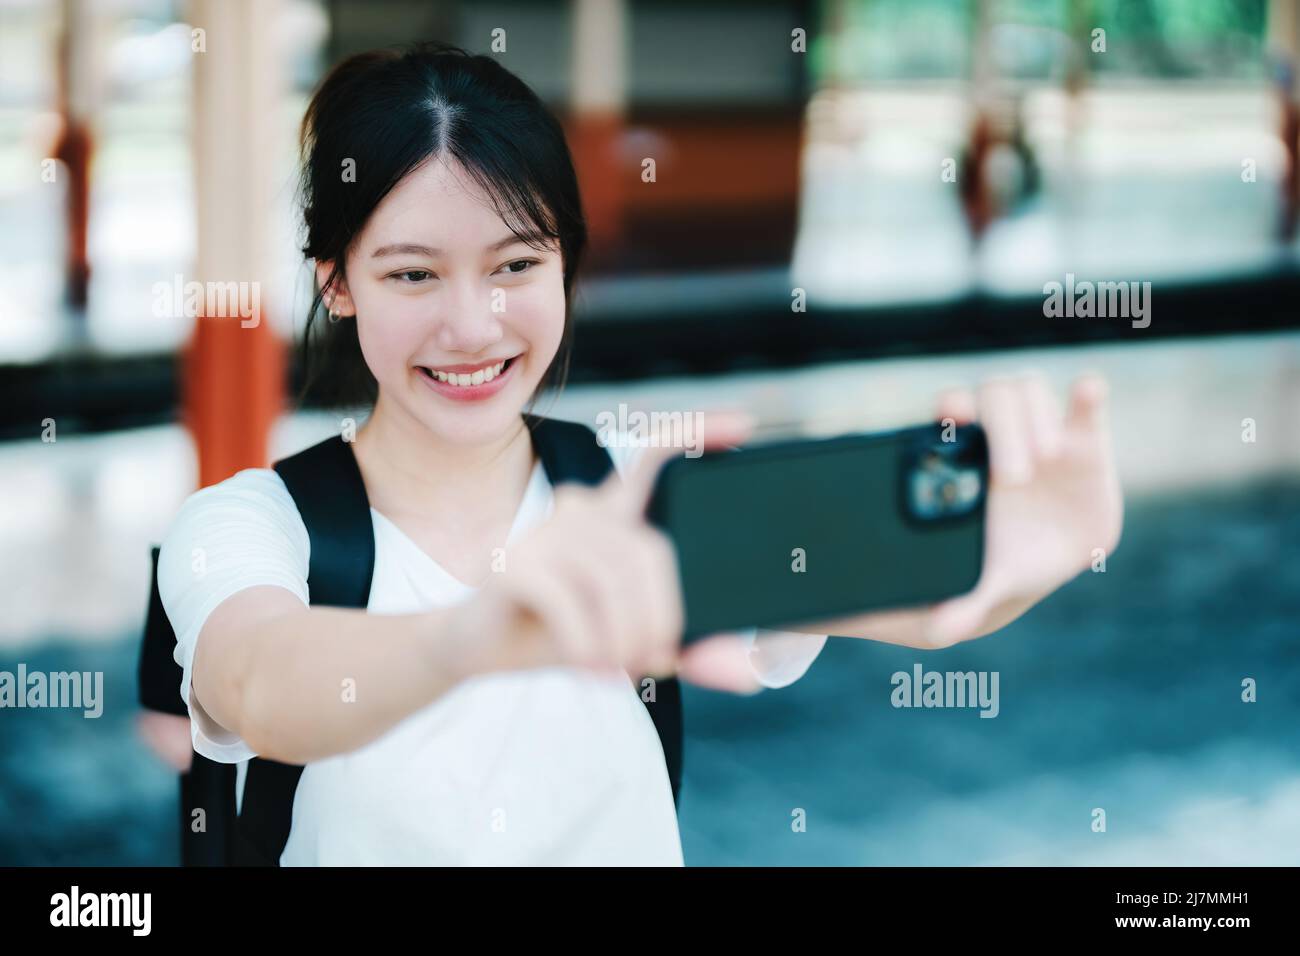 Estate, relax, vacanza, viaggio, ritratto di bella ragazza asiatica utilizzando lo smartphone mobile prendere una foto selfie faccia te alla stazione ferroviaria Foto Stock